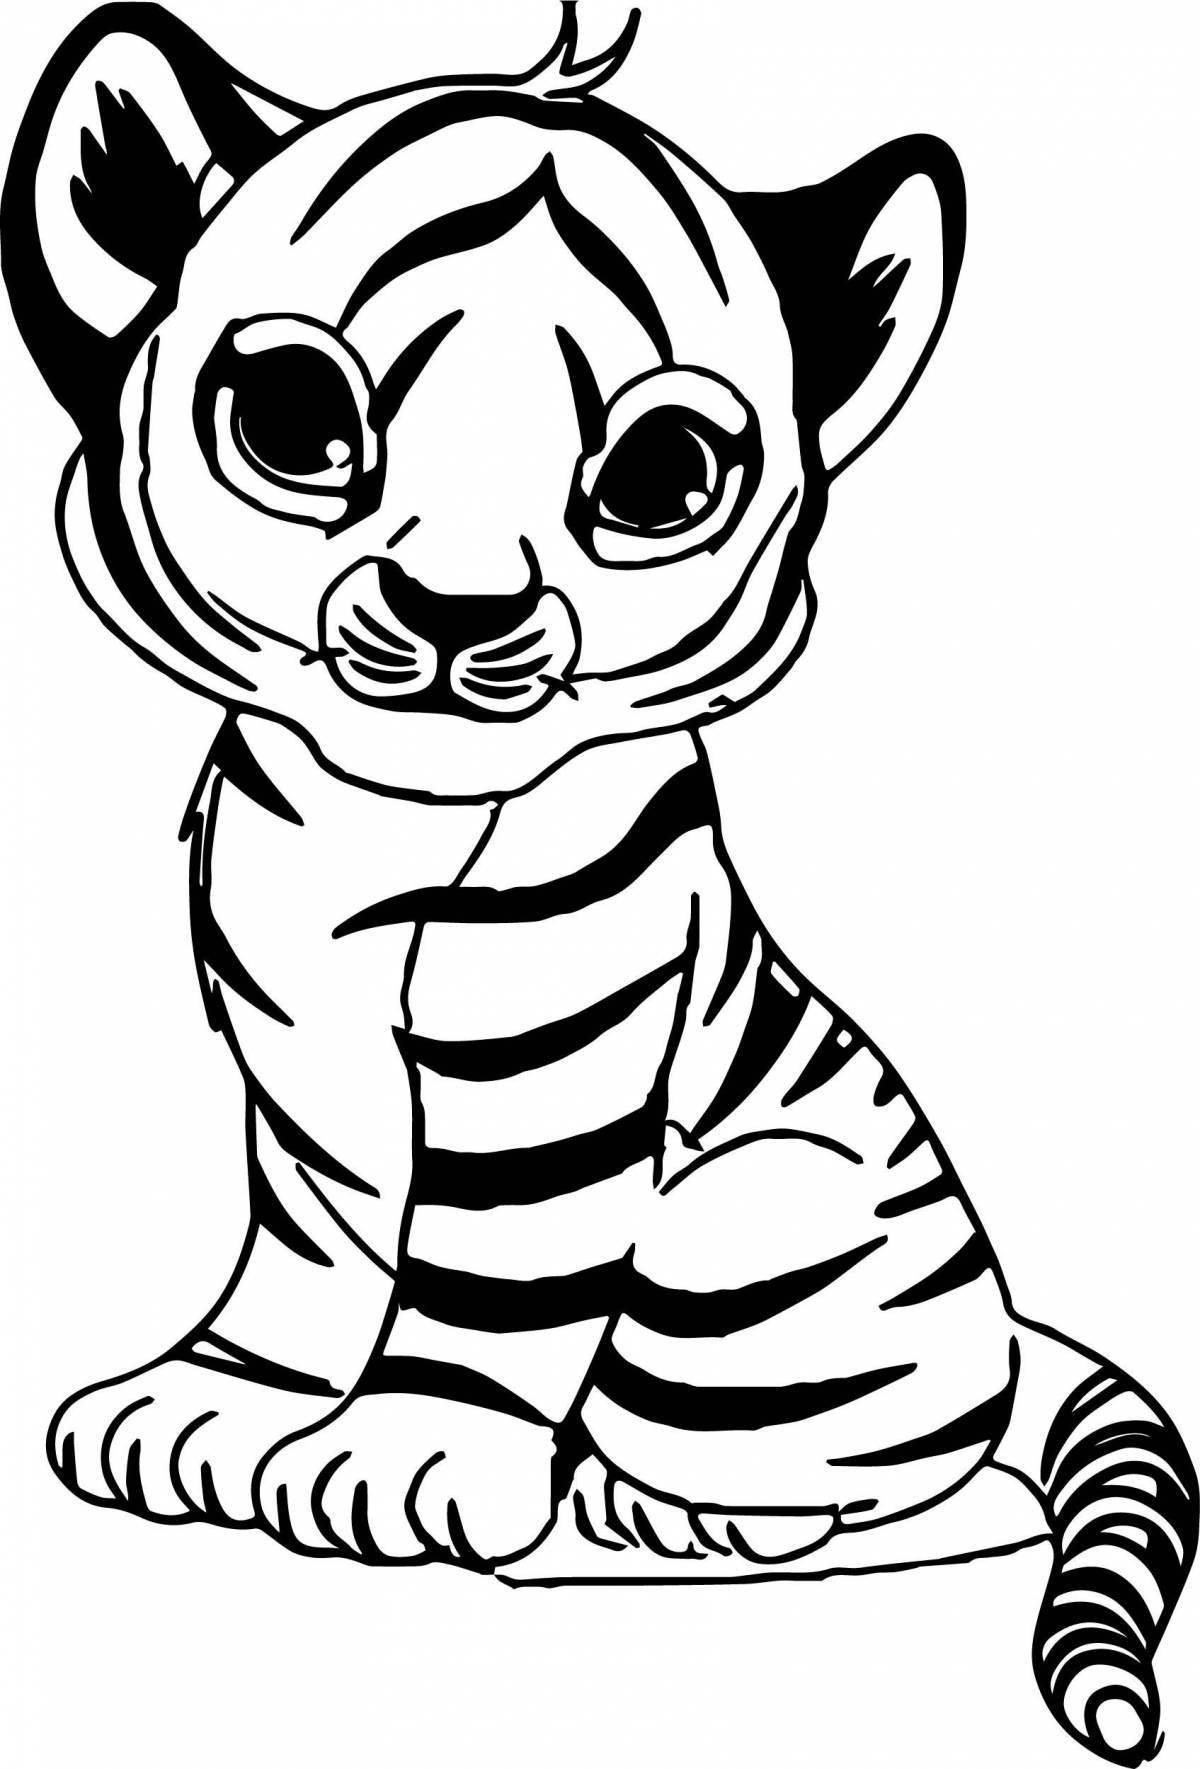 Яркая раскраска тигра для детей 3-4 лет